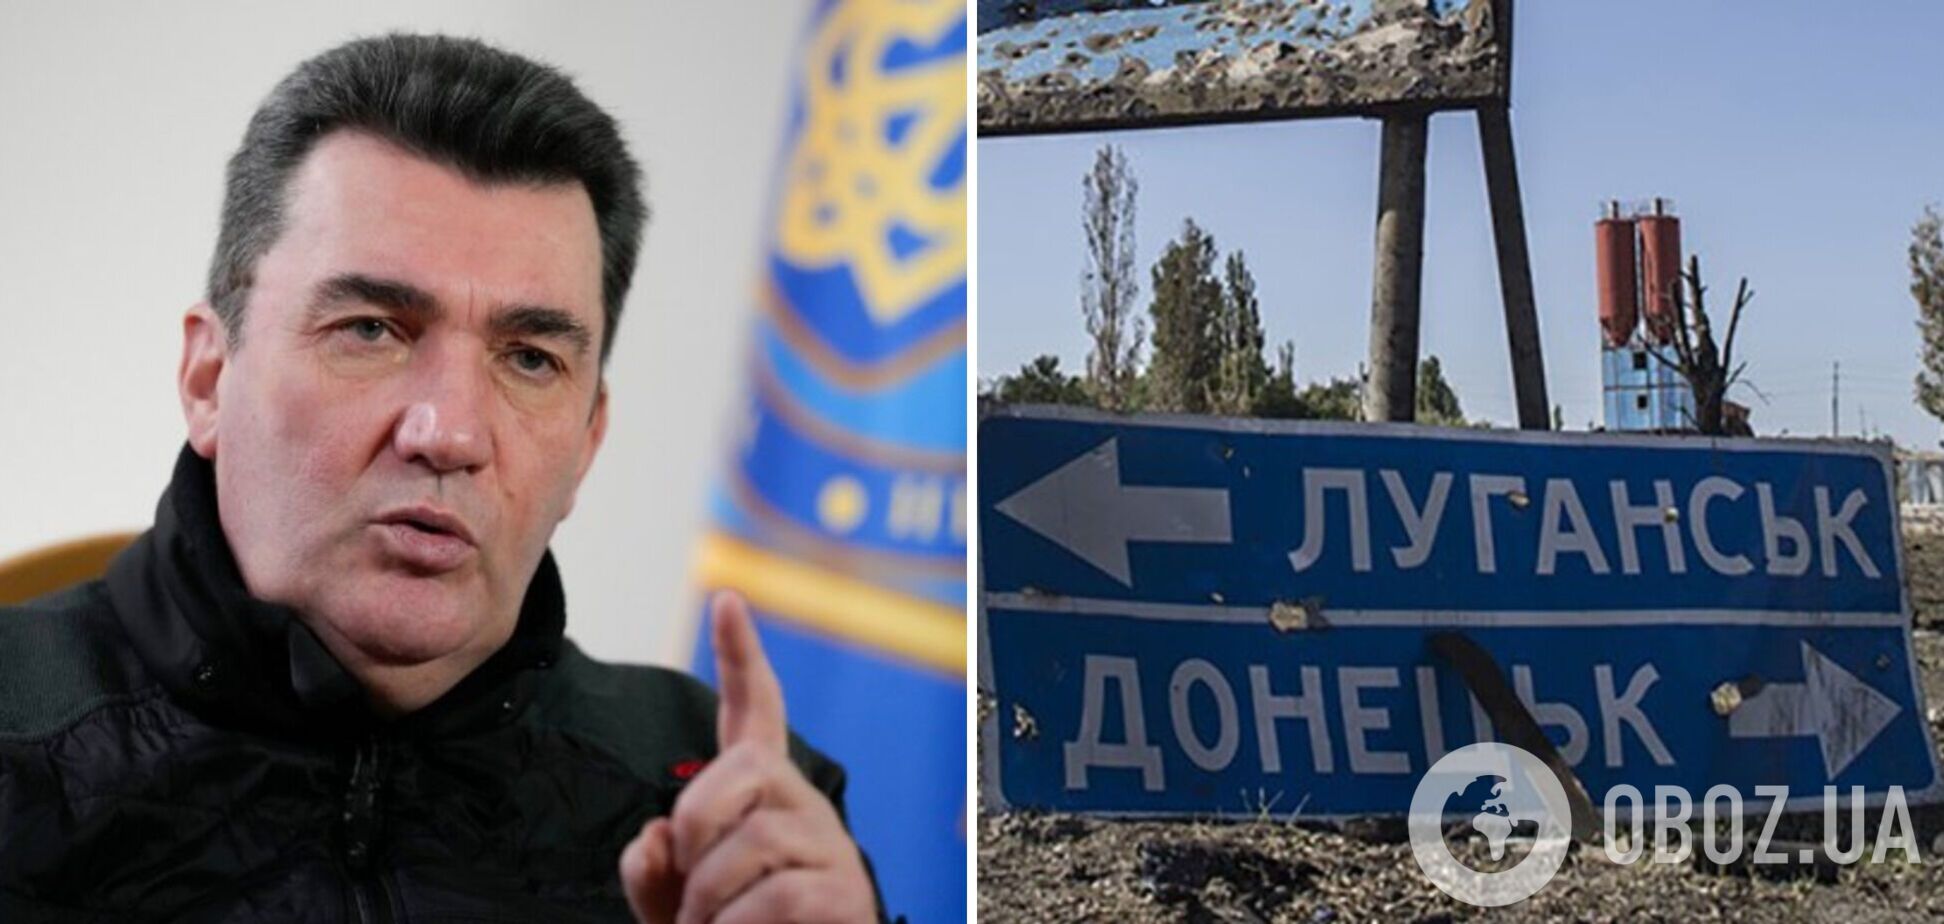 Данилов заявил, что тем, кто жил в российской оккупации, придется найти общий язык с остальными украинцами